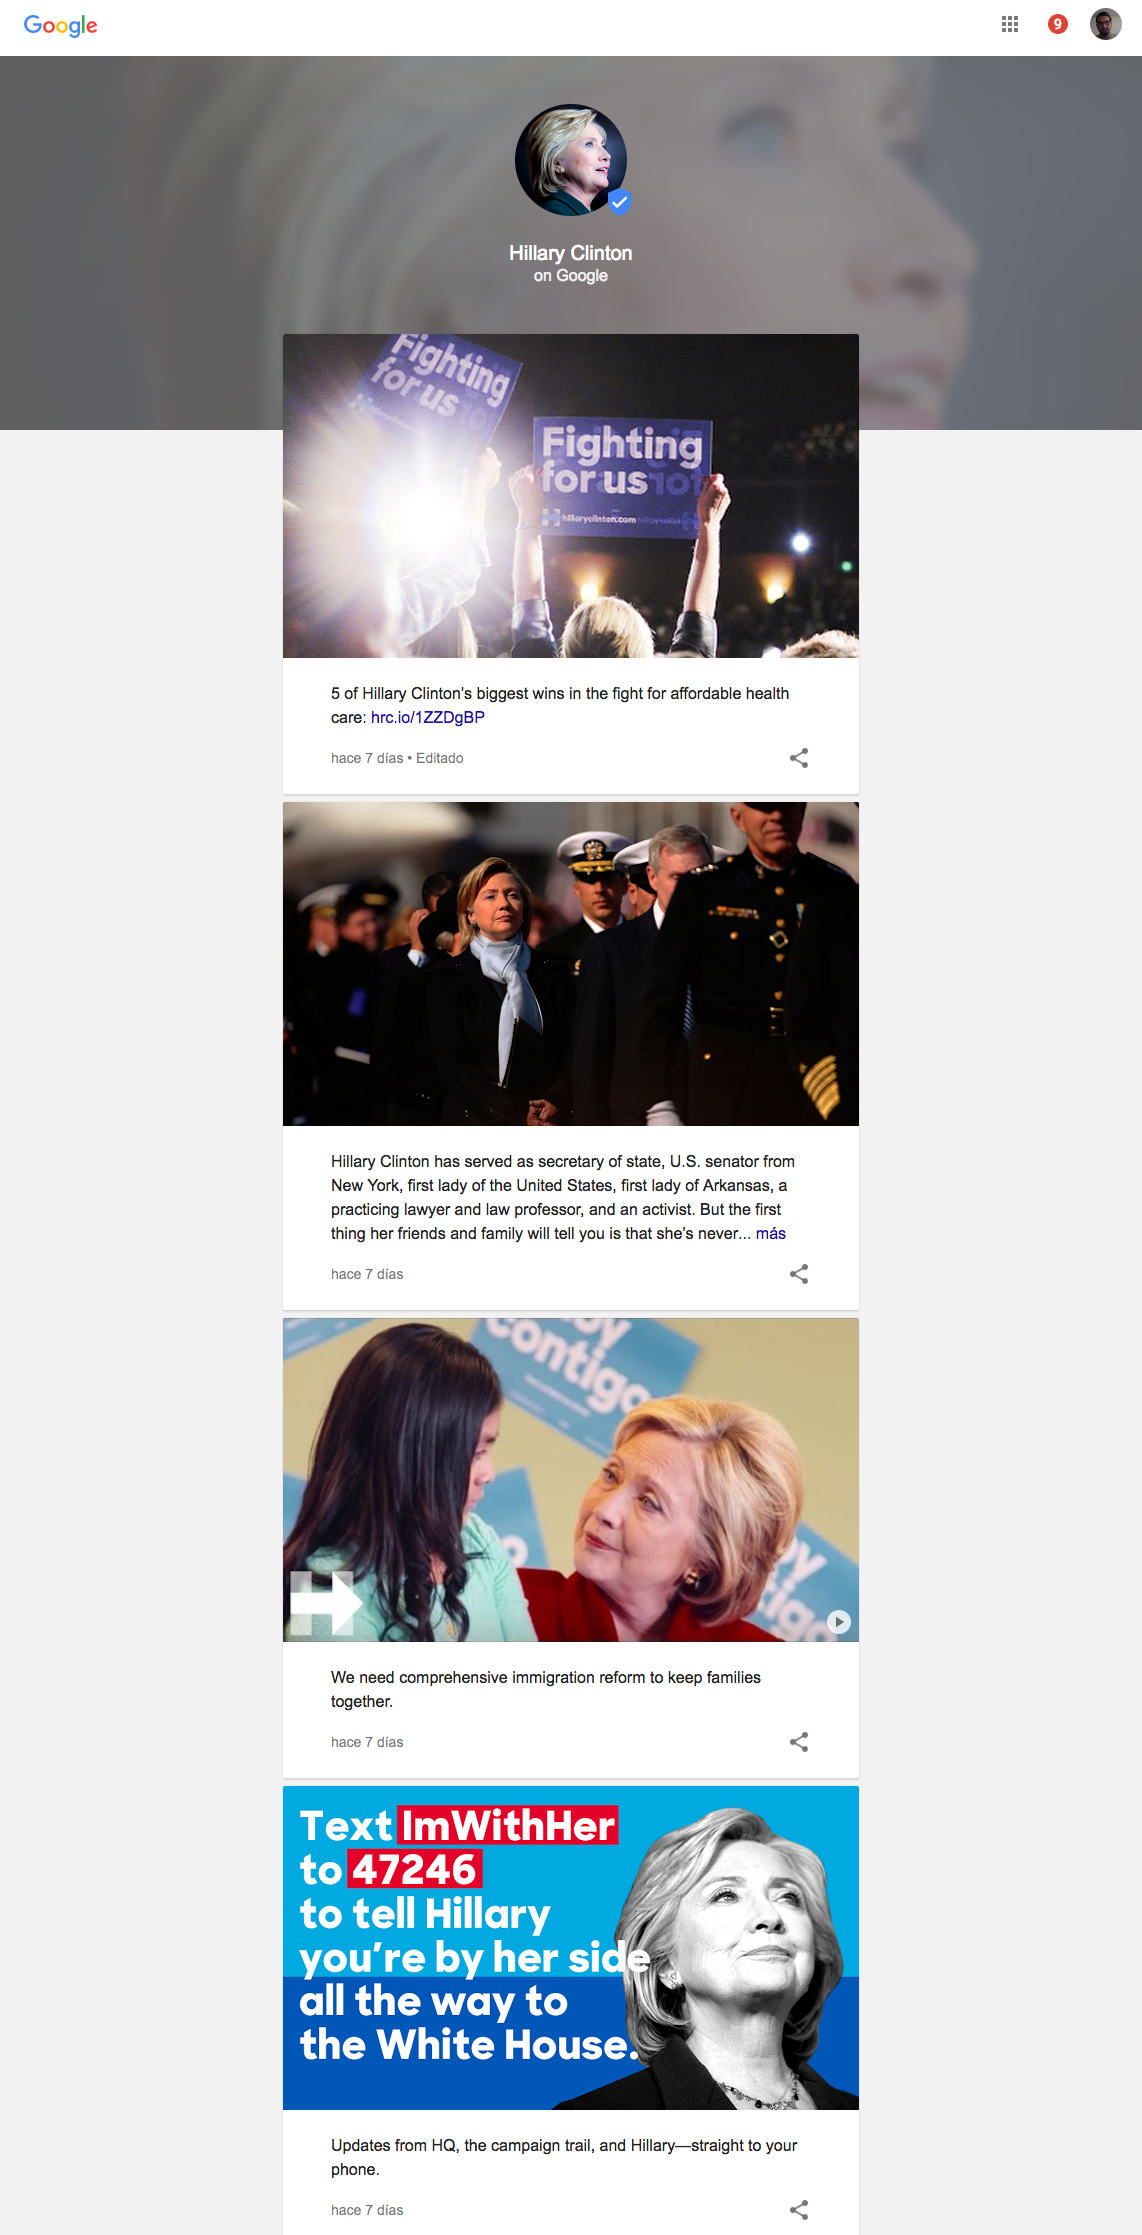 Google presenta la información sobre Hillary Clinton en una manera de fácil lectura para los internautas. 